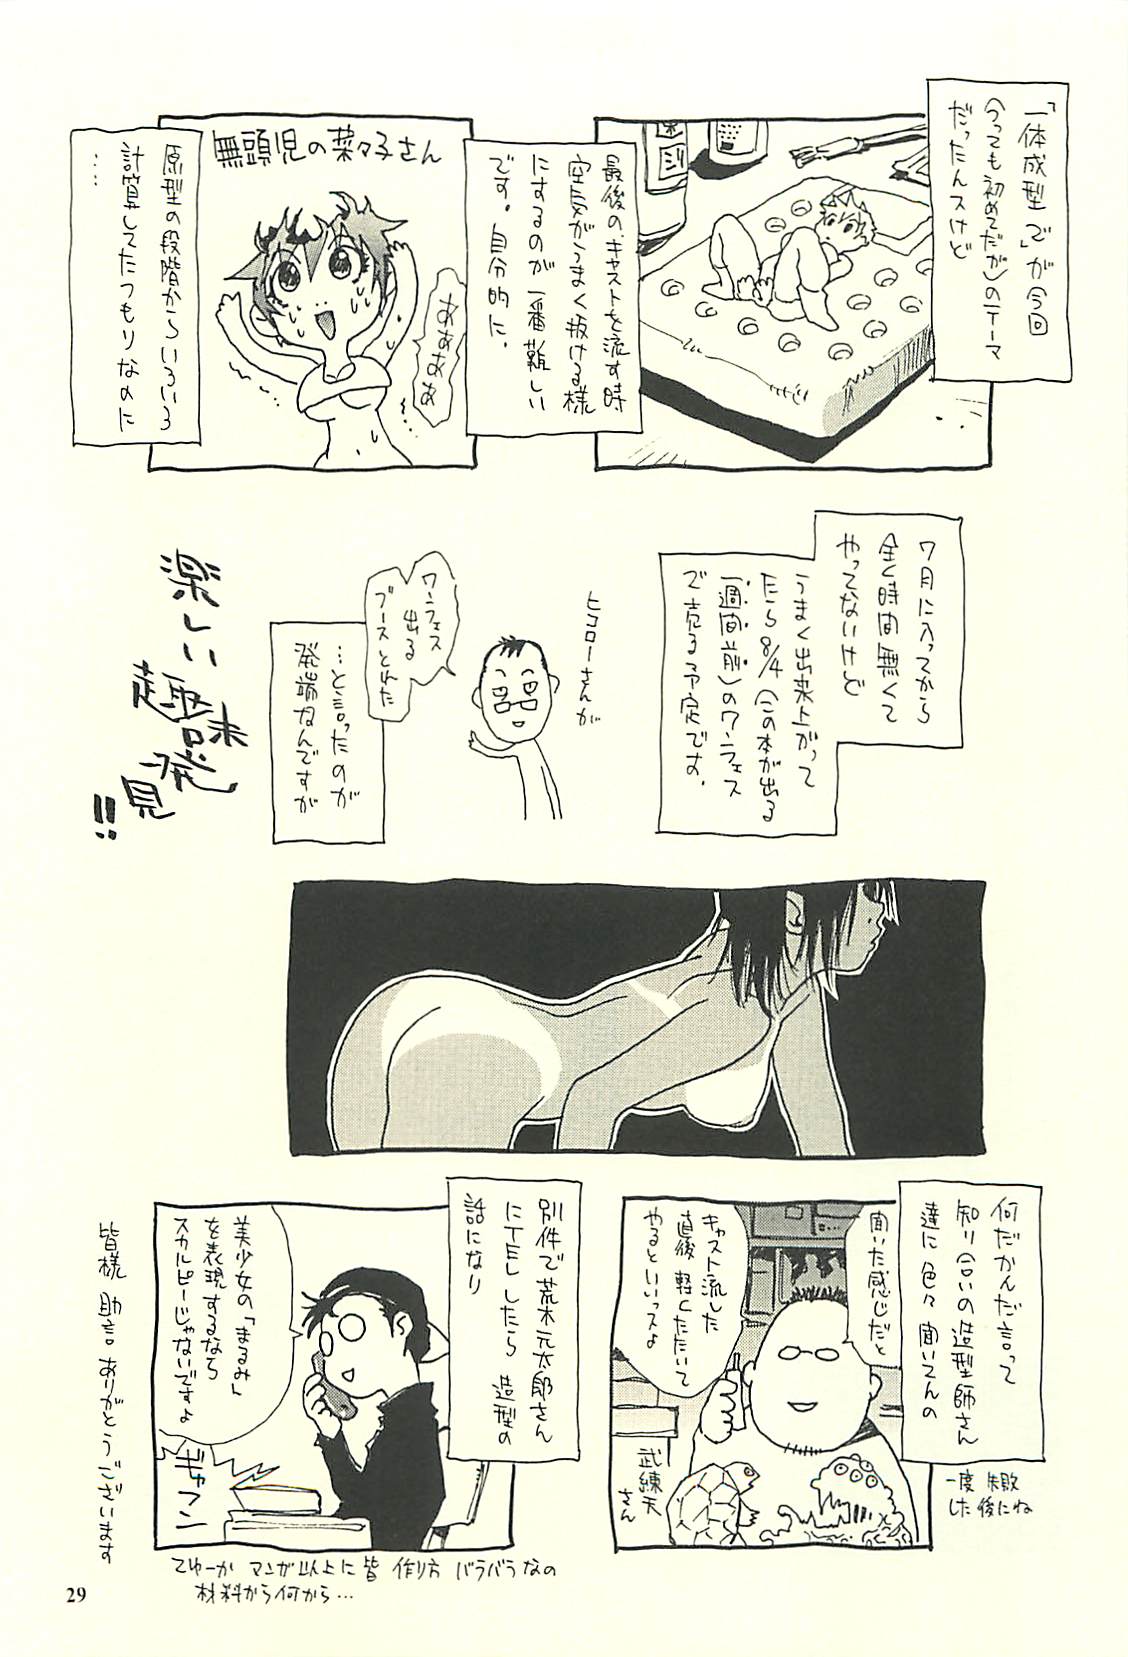 [NOUZUI MAJUTSU, NO-NO'S (Kawara Keisuke, Kanesada Keishi)] Nouzui Kawaraban Hinichijoutekina Nichijou II [脳髄魔術, NO-NO'S (瓦敬助, 兼処敬士)] 脳髄瓦版 非日常的な日常II